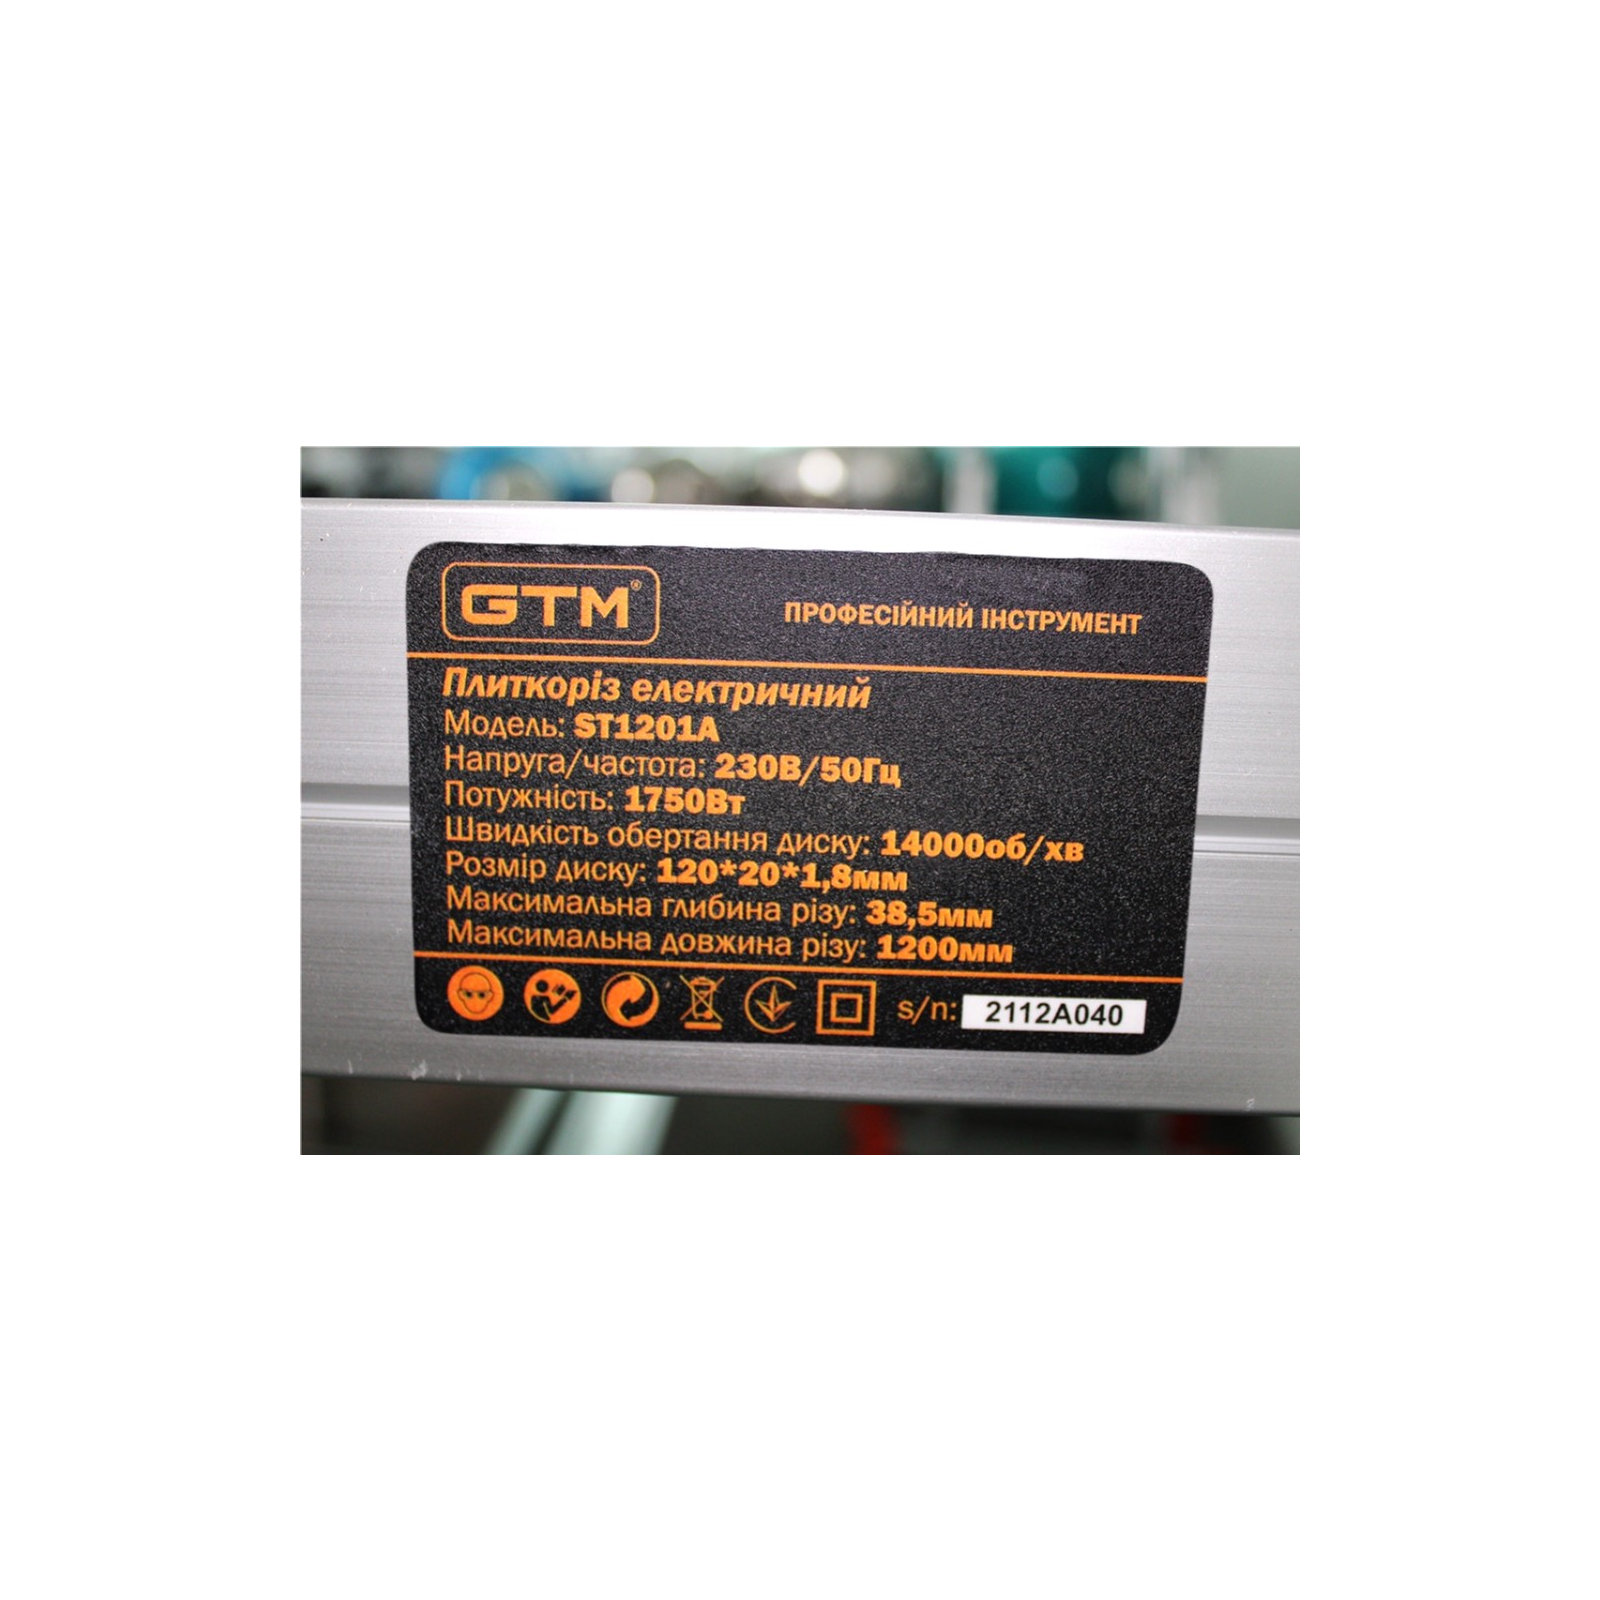 Плиткорез GTM 1200 мм 230В/1750Вт, автоподача (ST1201A) изображение 9